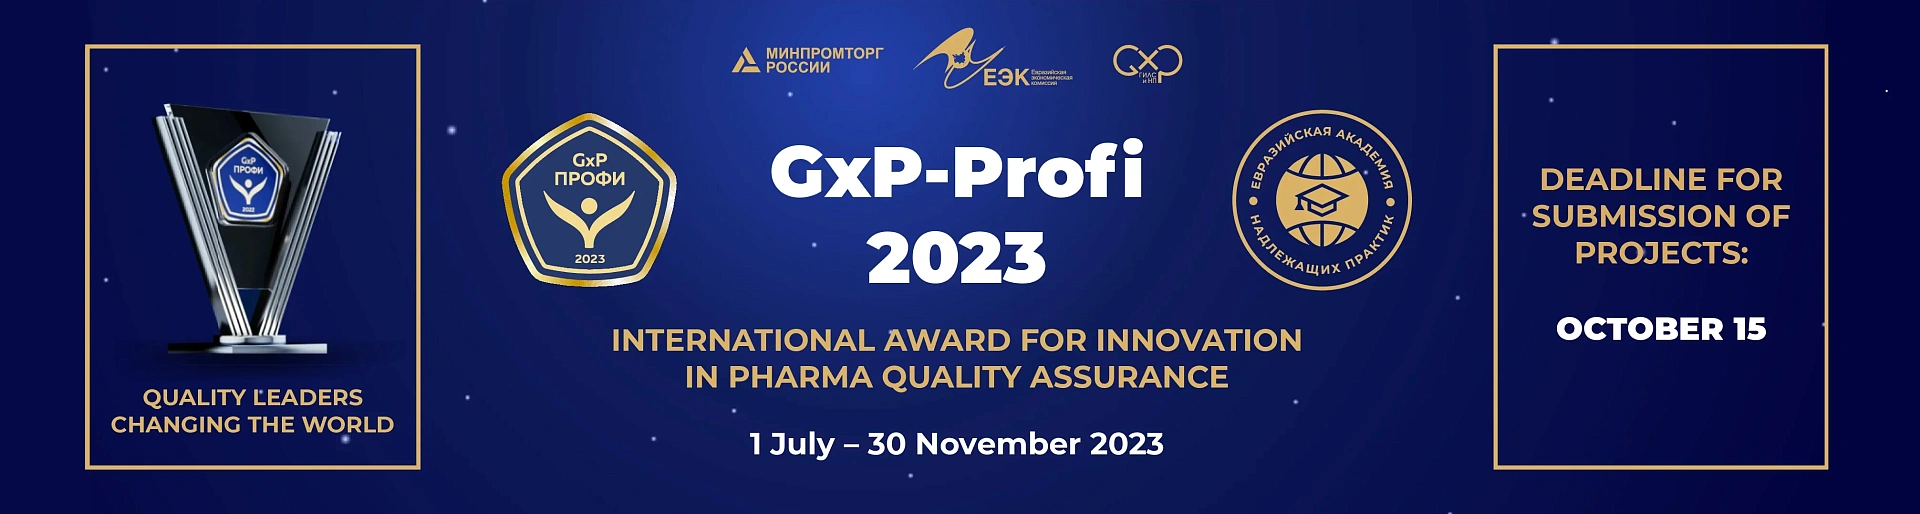 GxP-Profi 2023 ENG 